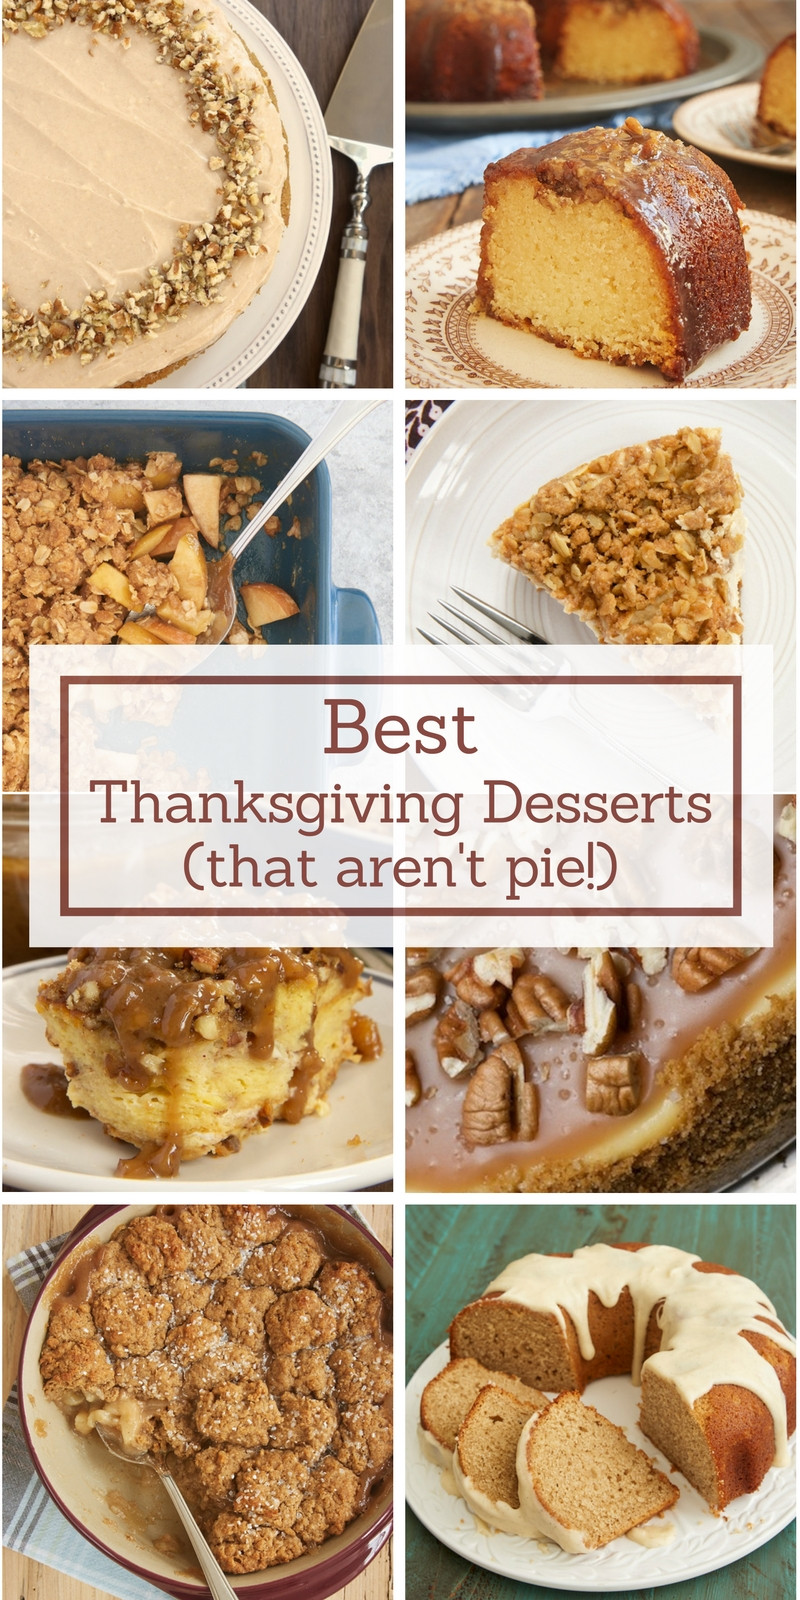 Best Thanksgiving Desserts
 Best Thanksgiving Desserts Bake or Break